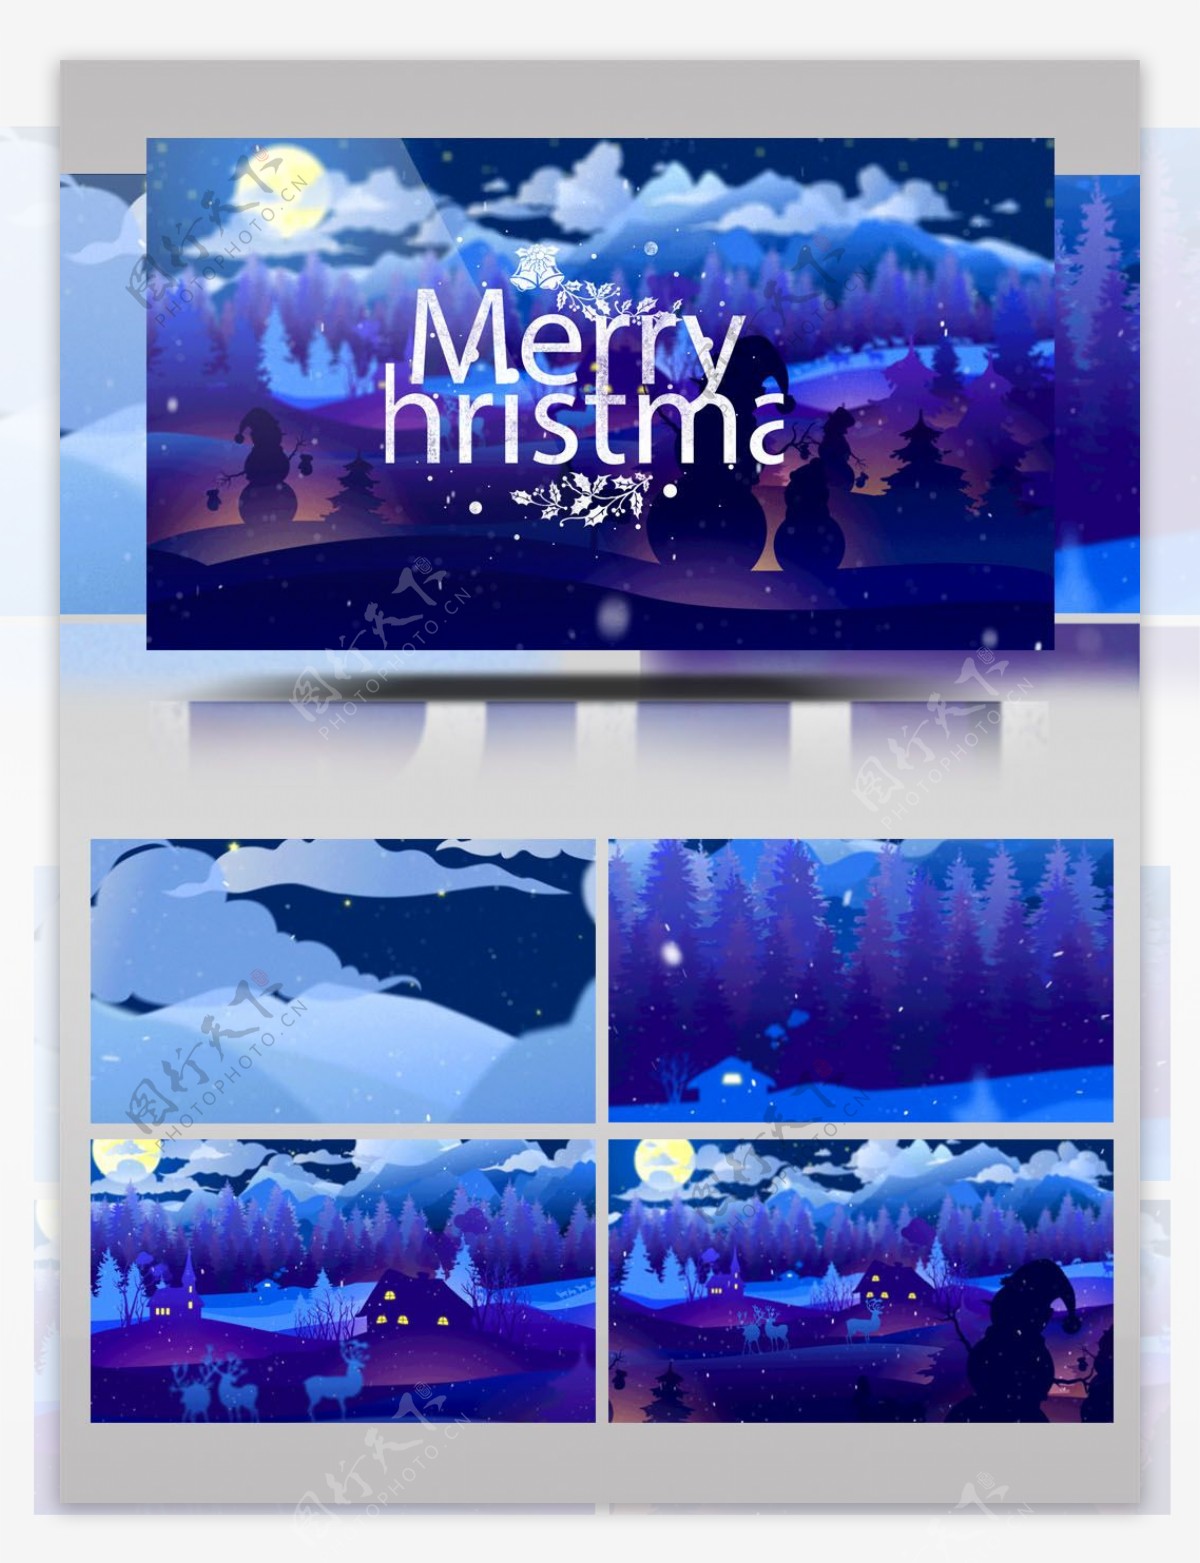 冬日夜晚村庄的蓝色圣诞节开场动画ae模板